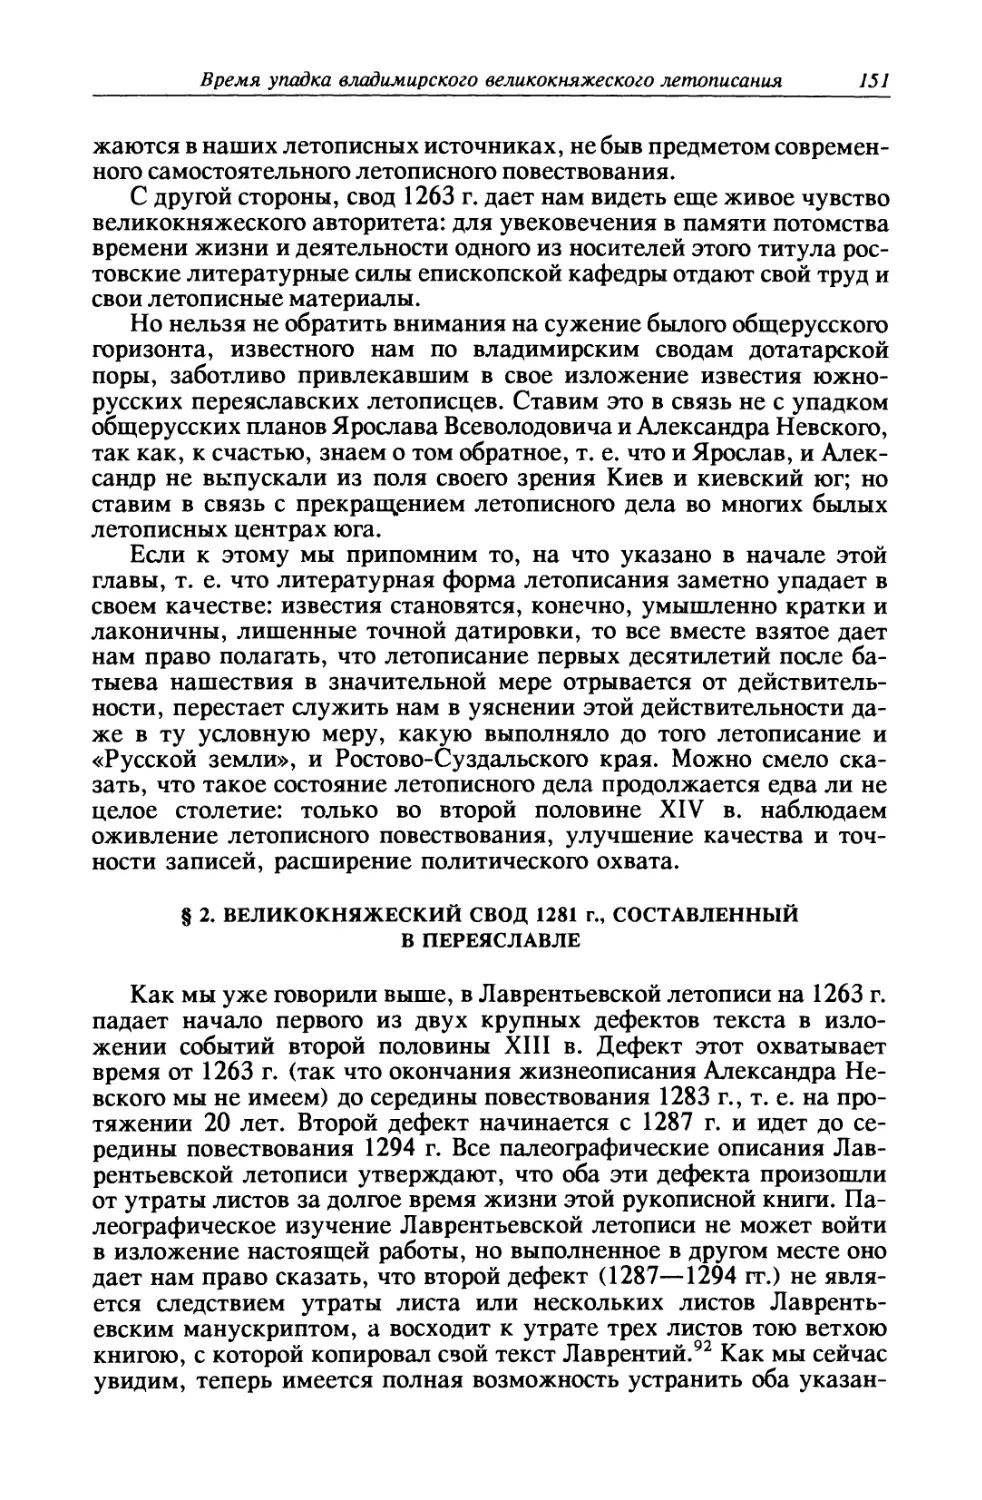 § 2. Великокняжеский свод 1281 г., составленный в Переяславле